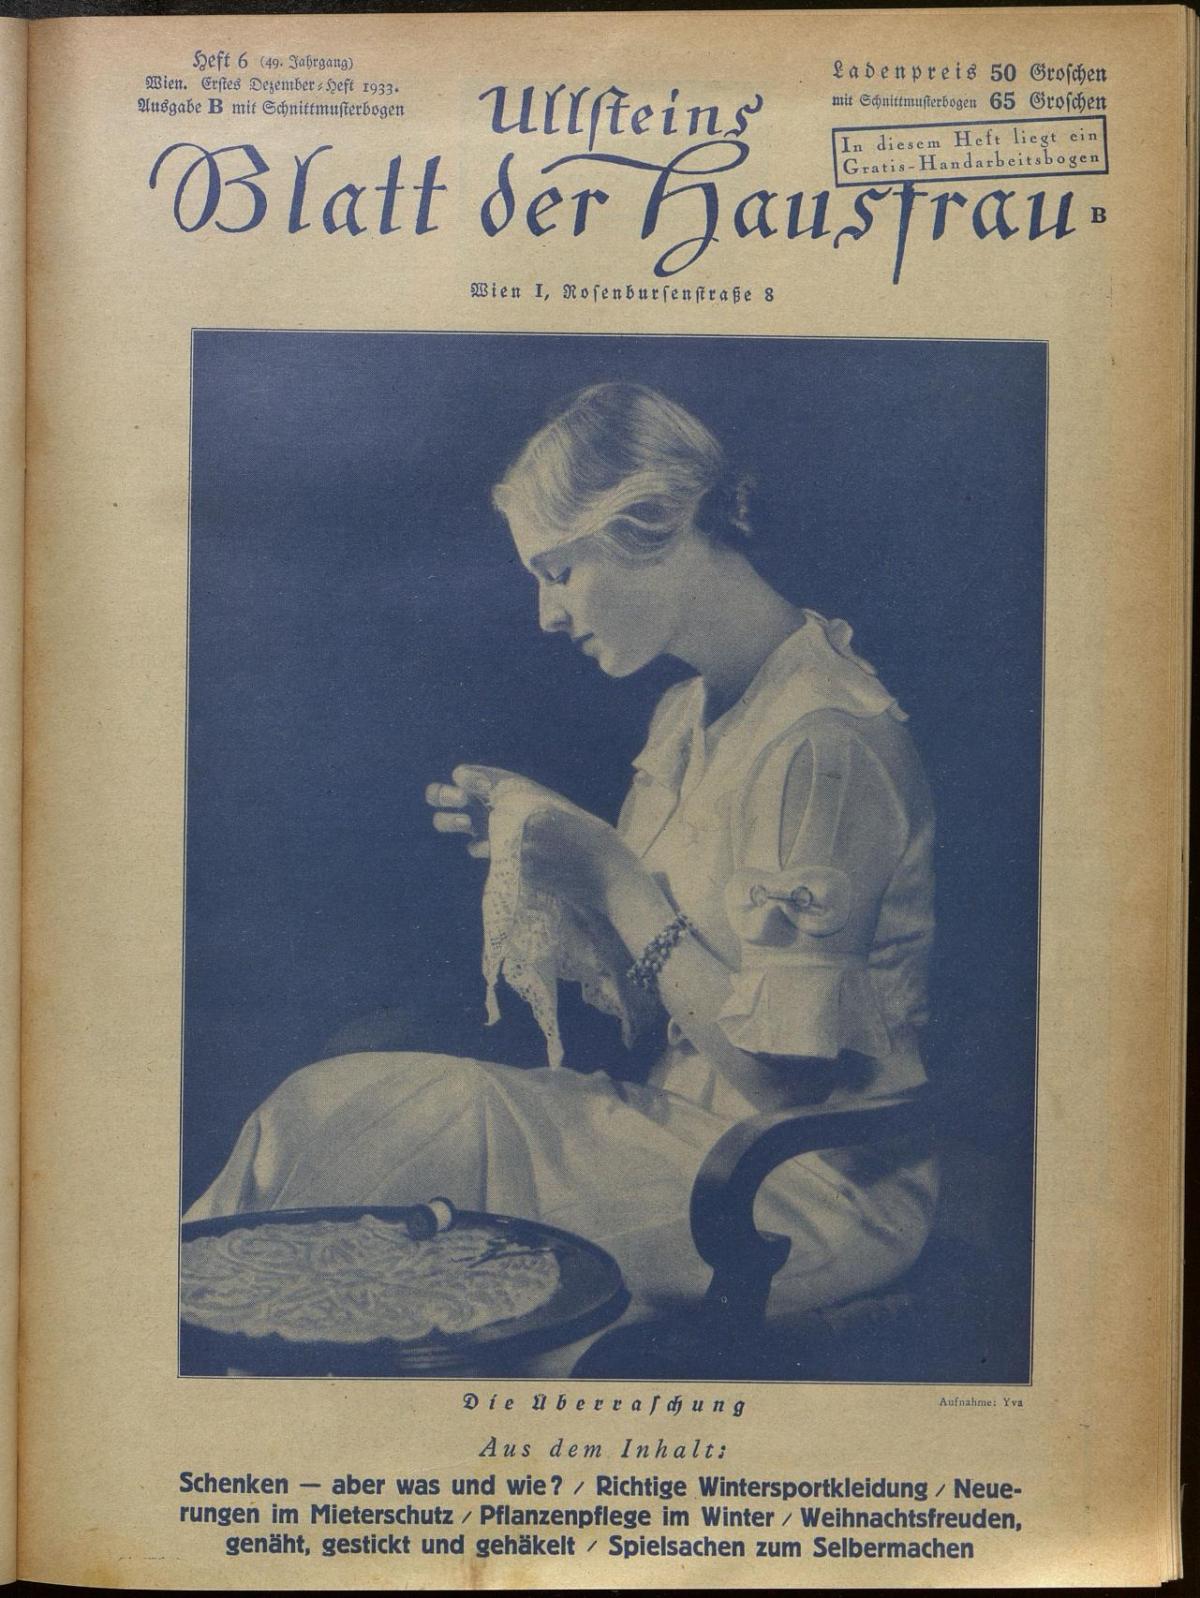 Abbildung Blatt der Hausfrau Blatt der Hausfrau 1933-1934 Heft 6 S 1